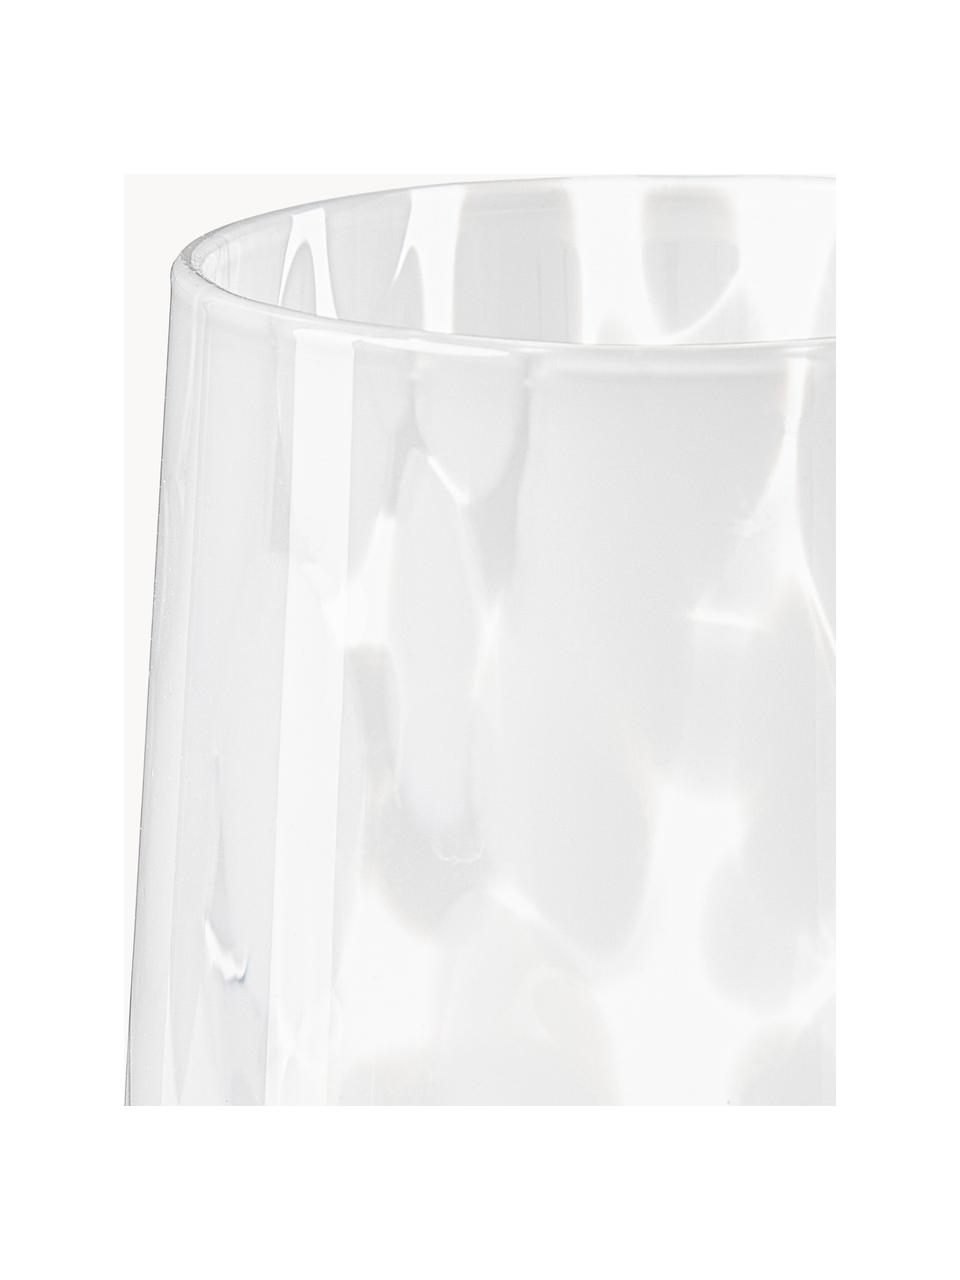 Handgemachte Wassergläser Oakley mit Tupfen-Muster, 4 Stück, Weiß, Transparent, Ø 9 x H 10 cm, 370 ml